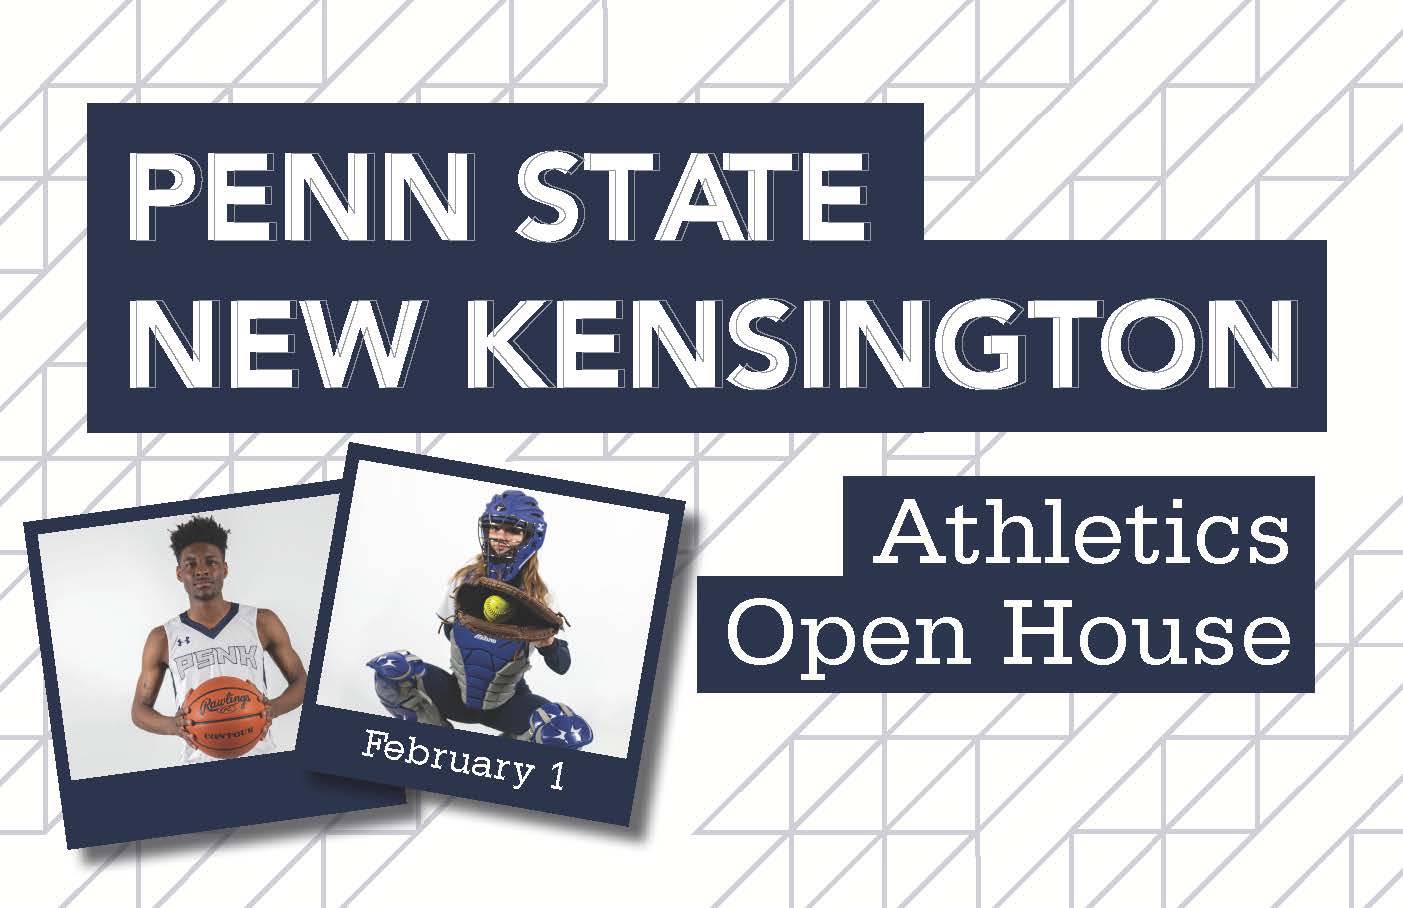 Penn State New Kensington Athletics Open House February 1